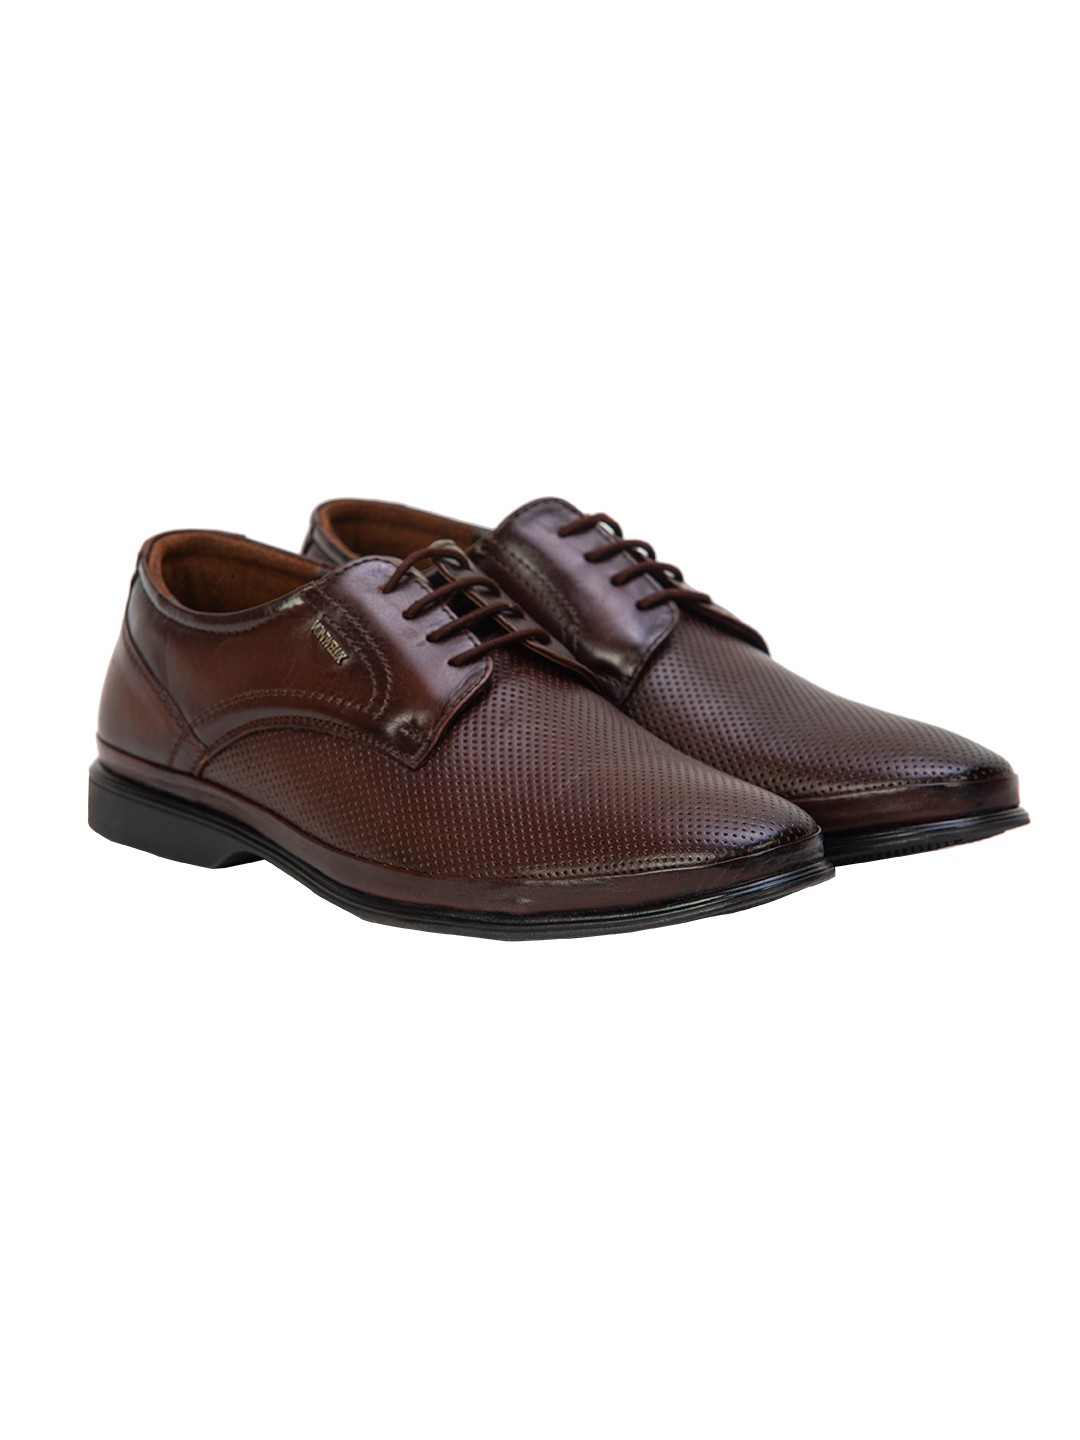 Buy Von Wellx Germany Comfort Coen Brown Shoes Online in Bihar